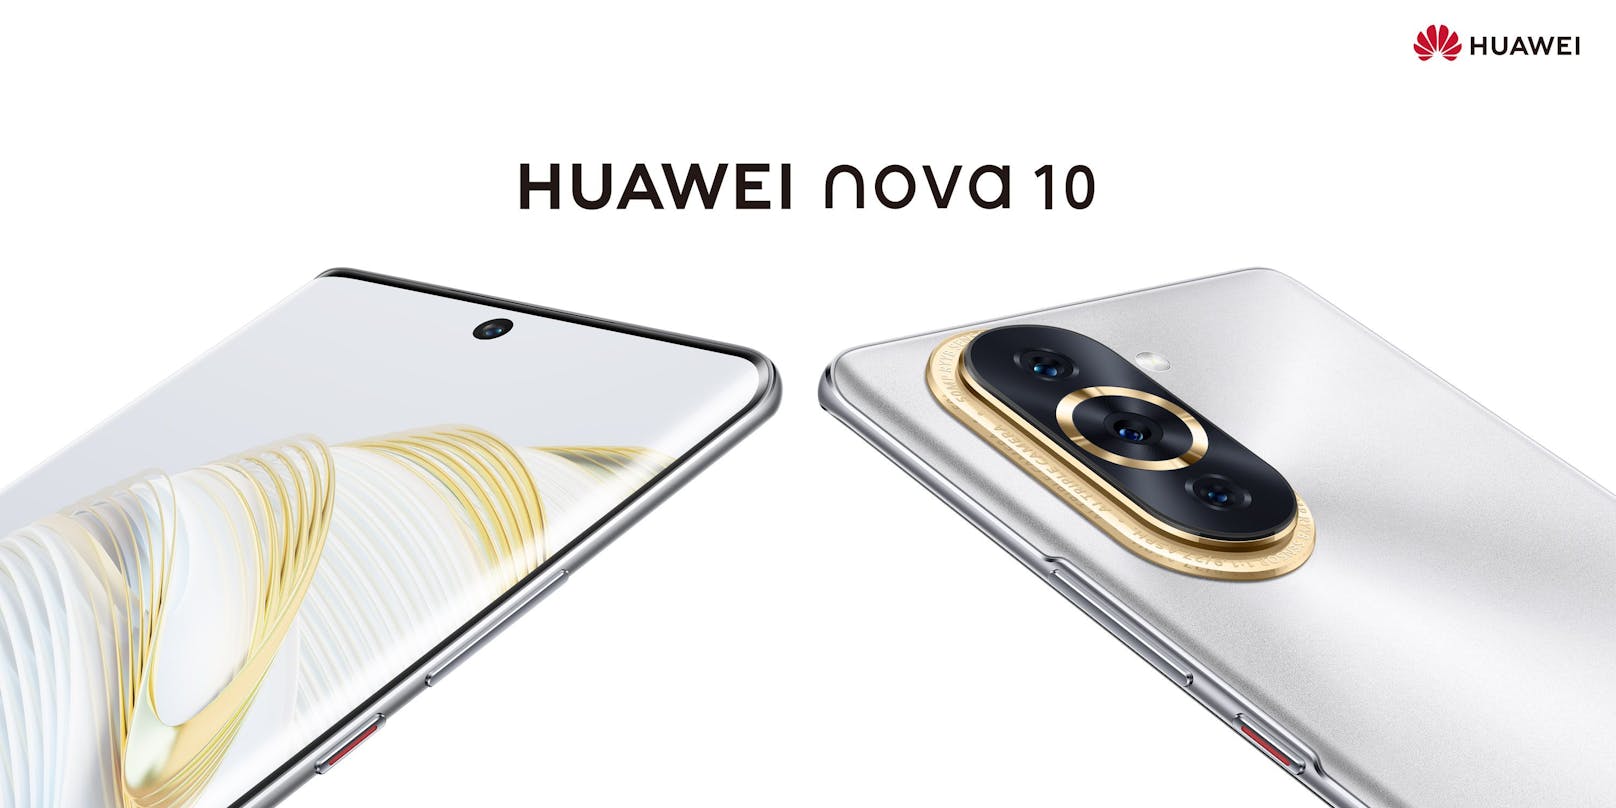 Das Huawei nova 10 startet demnächst in Österreich.